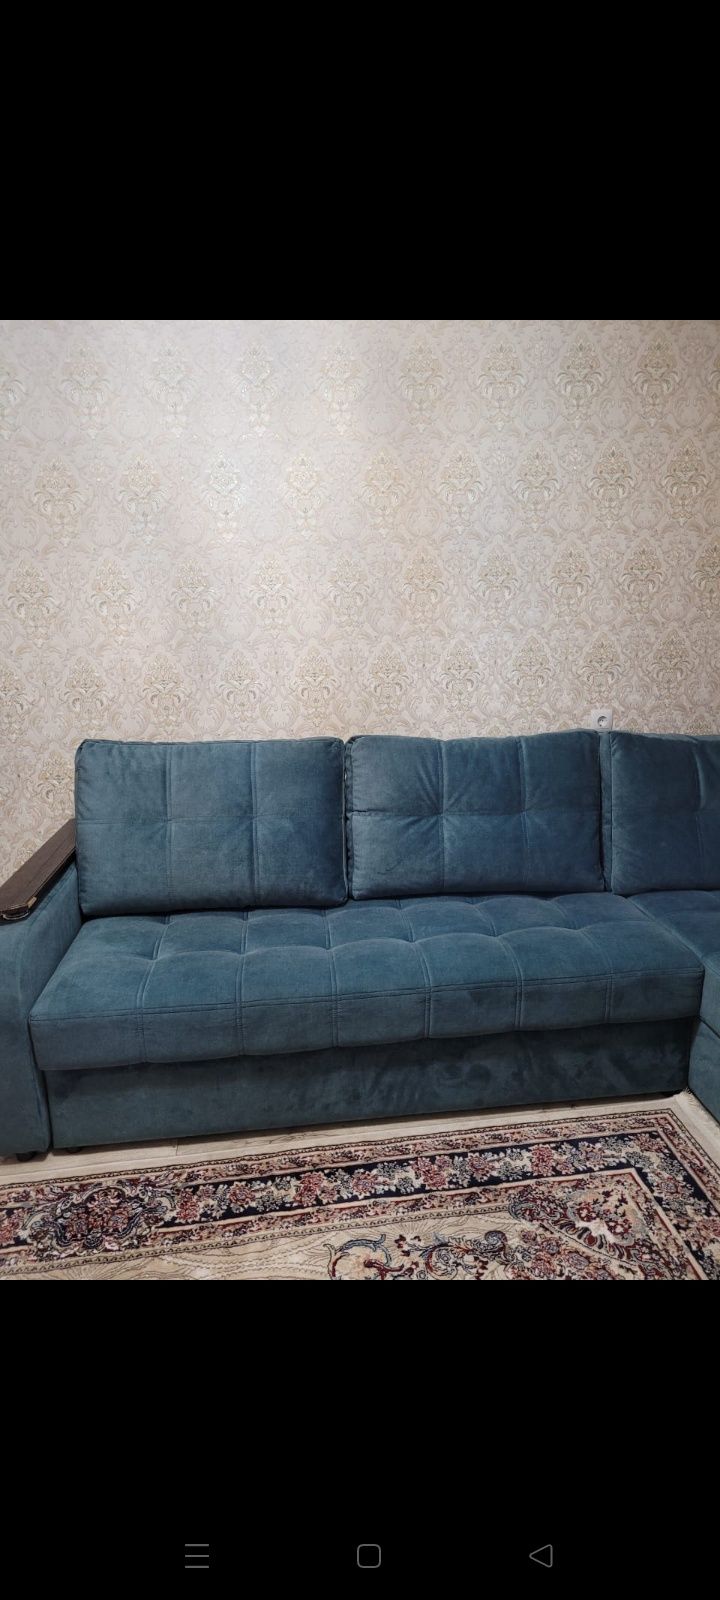 Продается диван, подставка